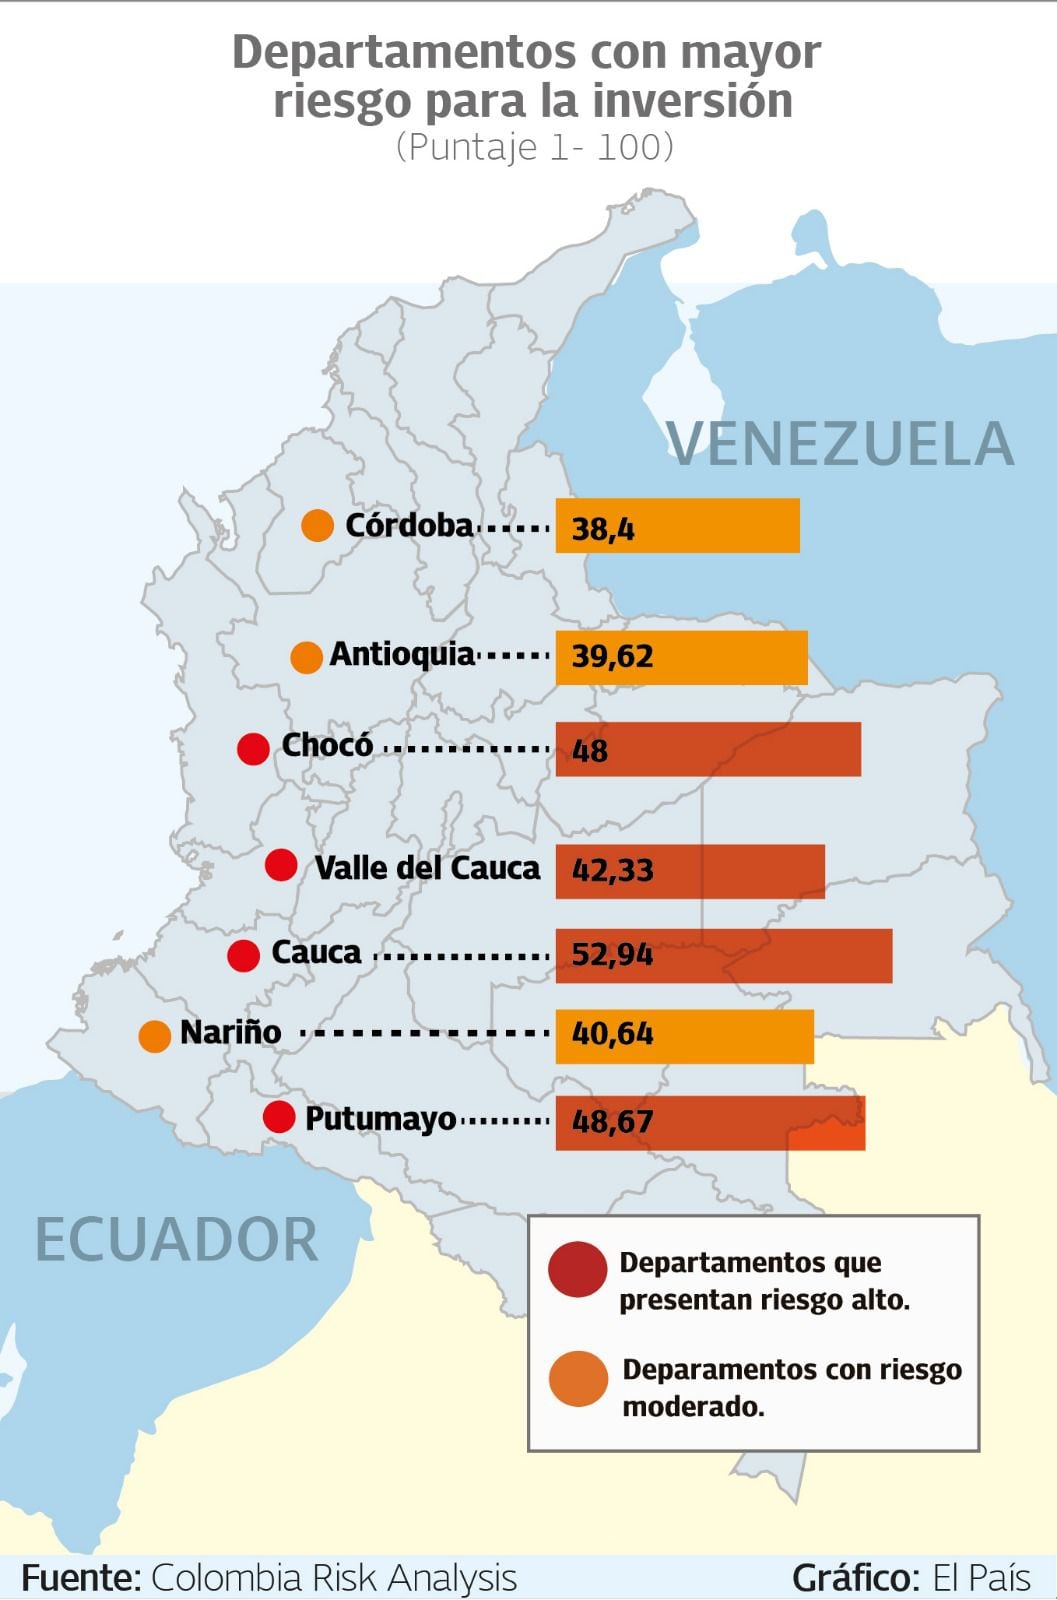 Departamentos del Pacífico con mayor riesgo para la inversión.
Gráfico: El País  Fuente: Colombia Risk Analysis